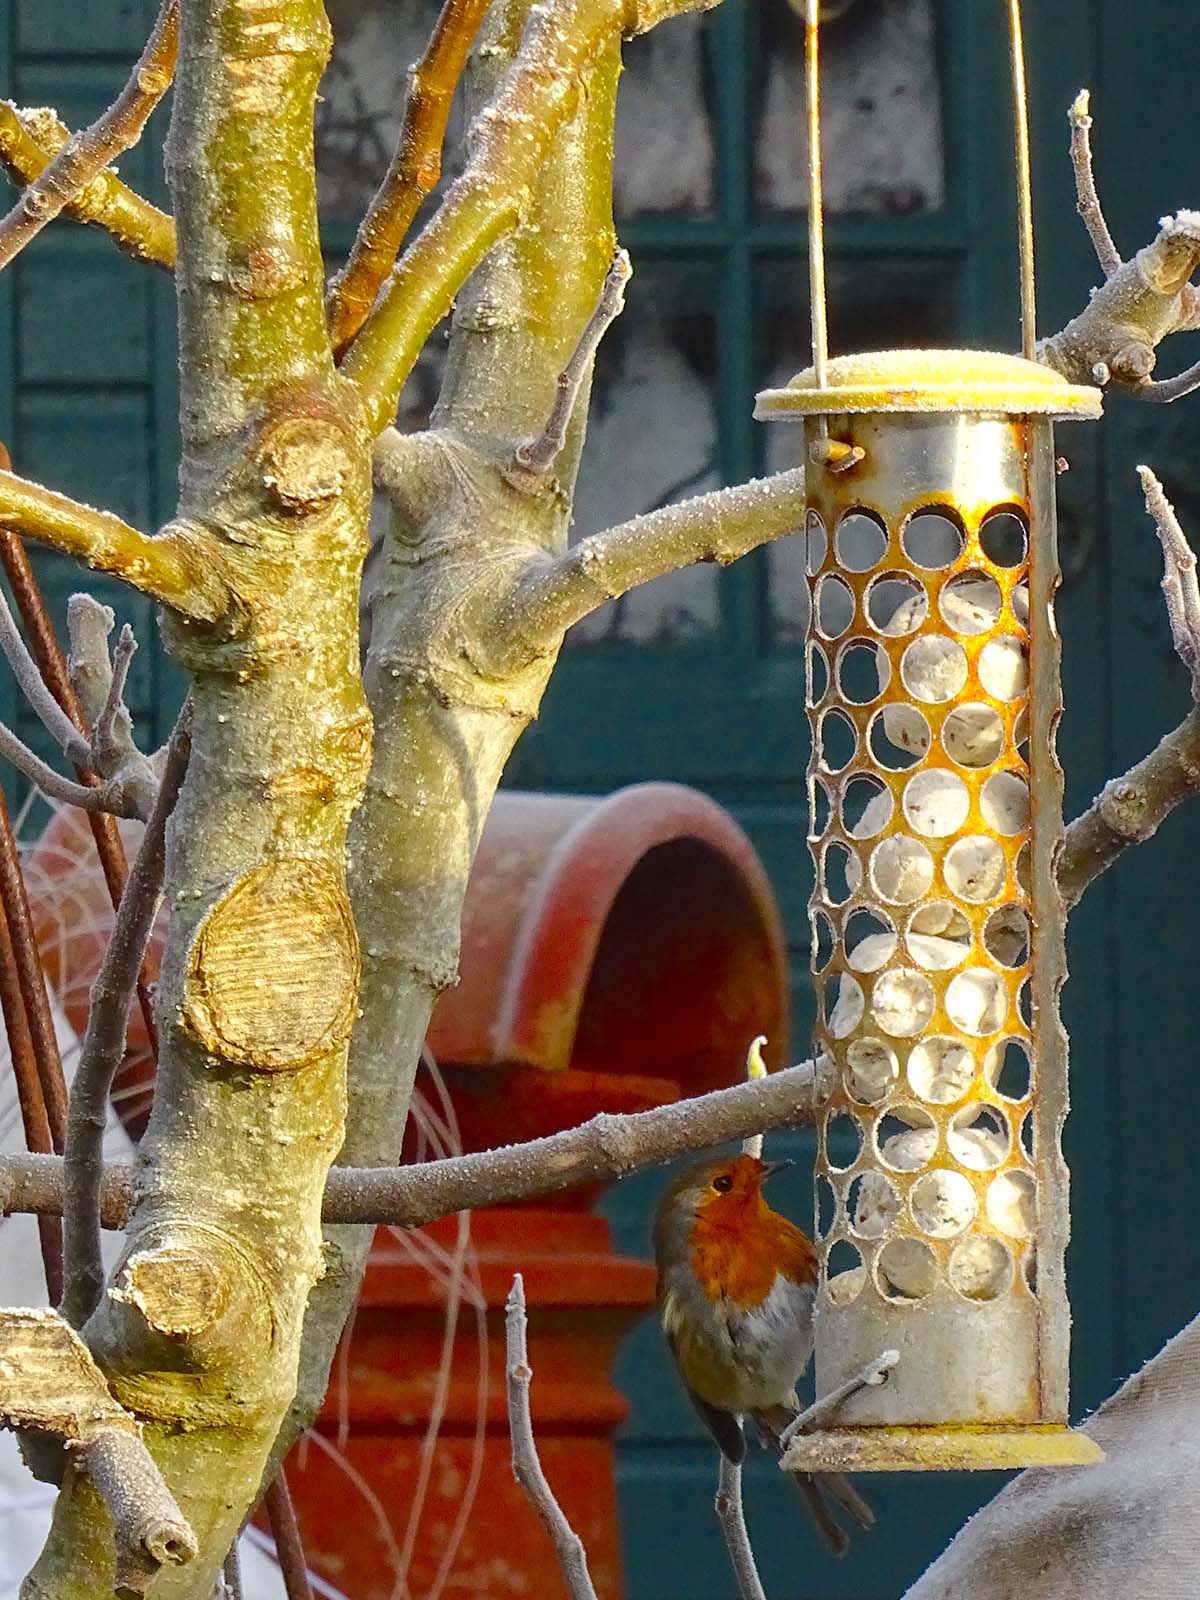 robin feeding